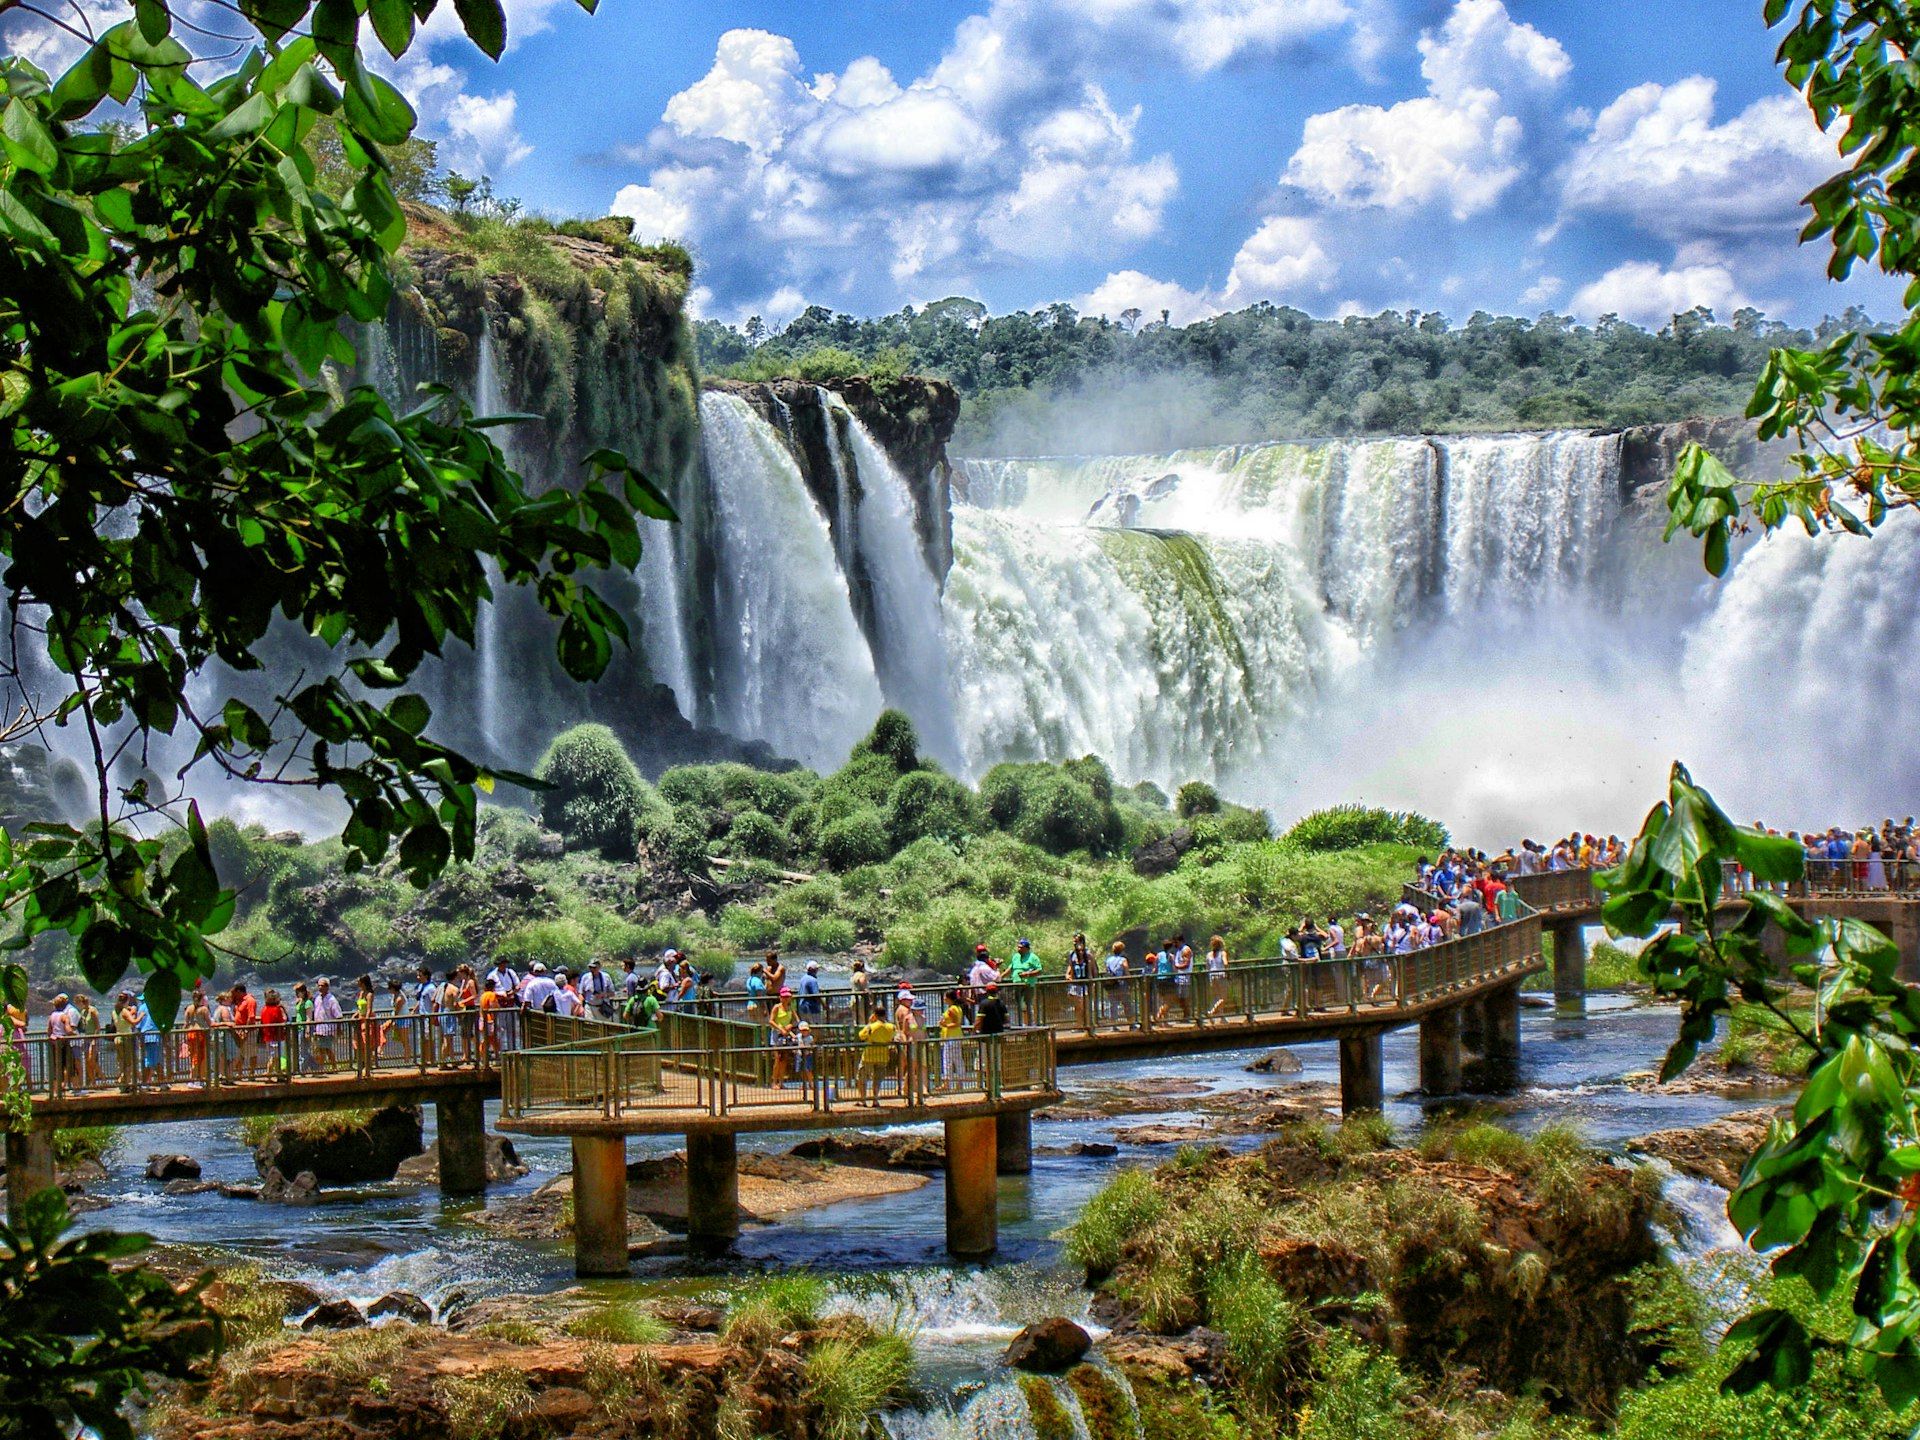 Visitors on a boardwalk at Foz do Iguazu Waterfalls